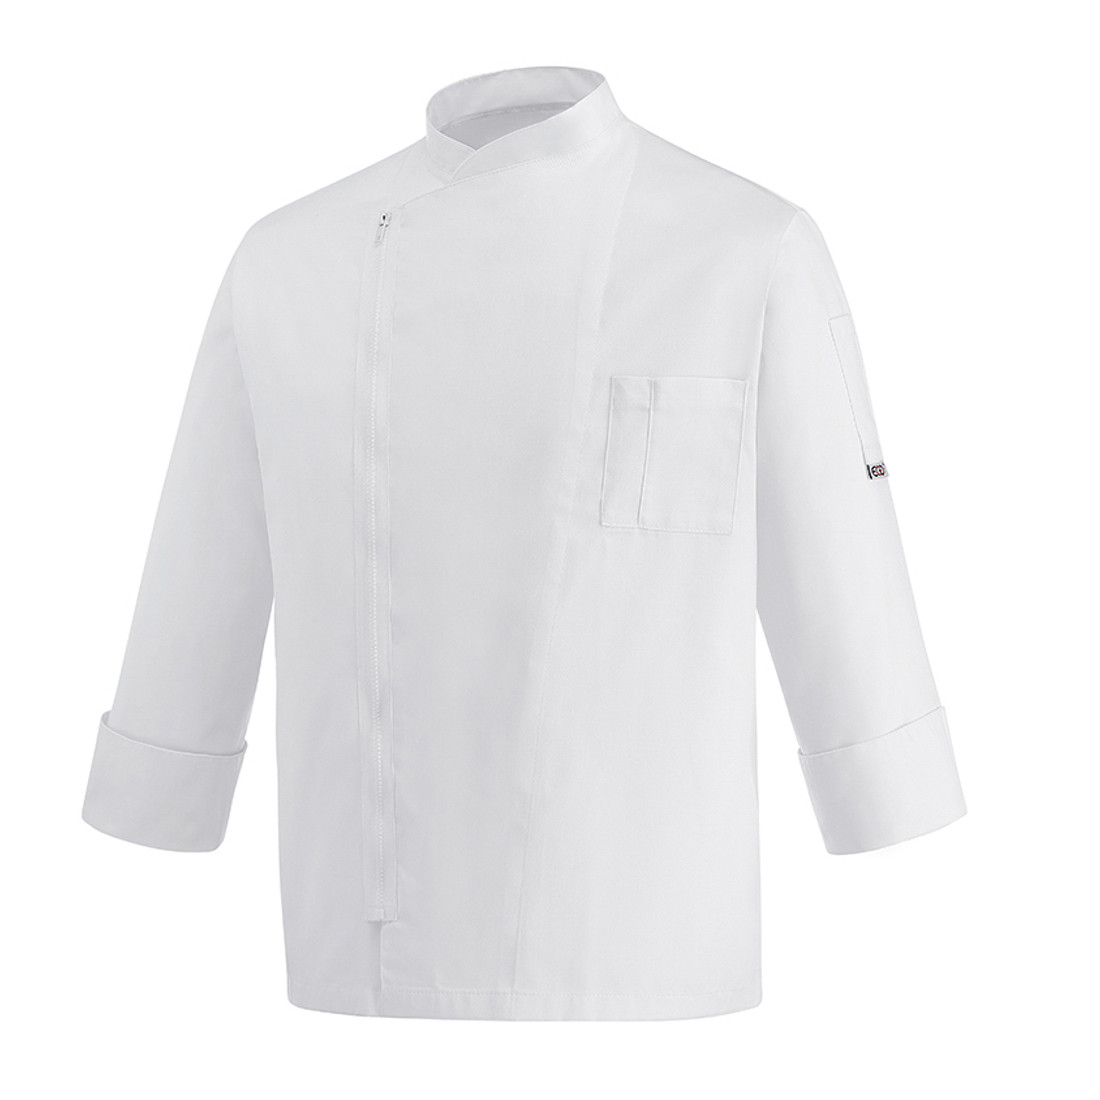 Zip Chef's Jacket - Safetywear